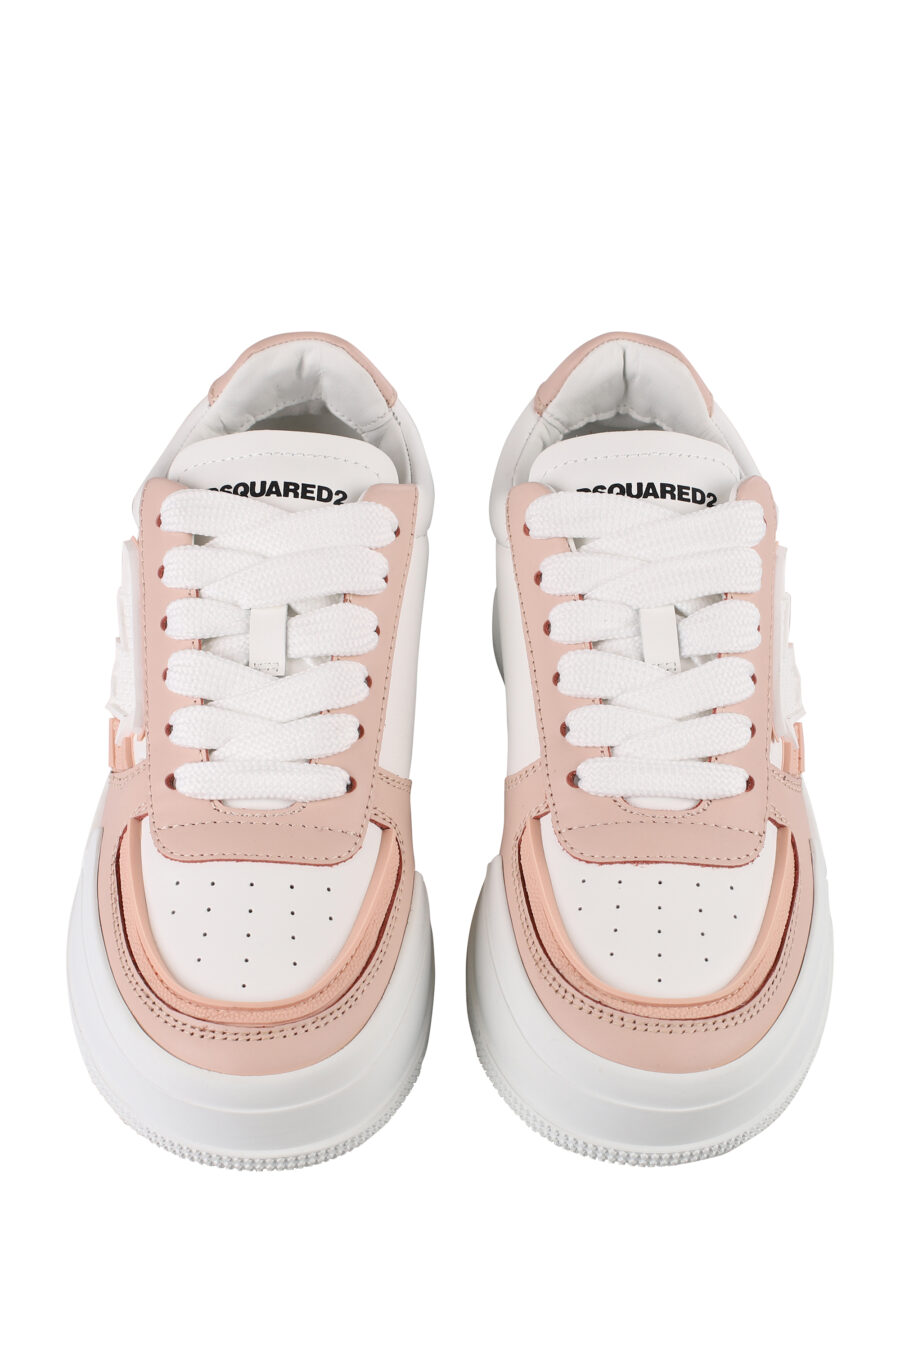 Zapatillas blancas de plataforma con detalle rosa - IMG 1225